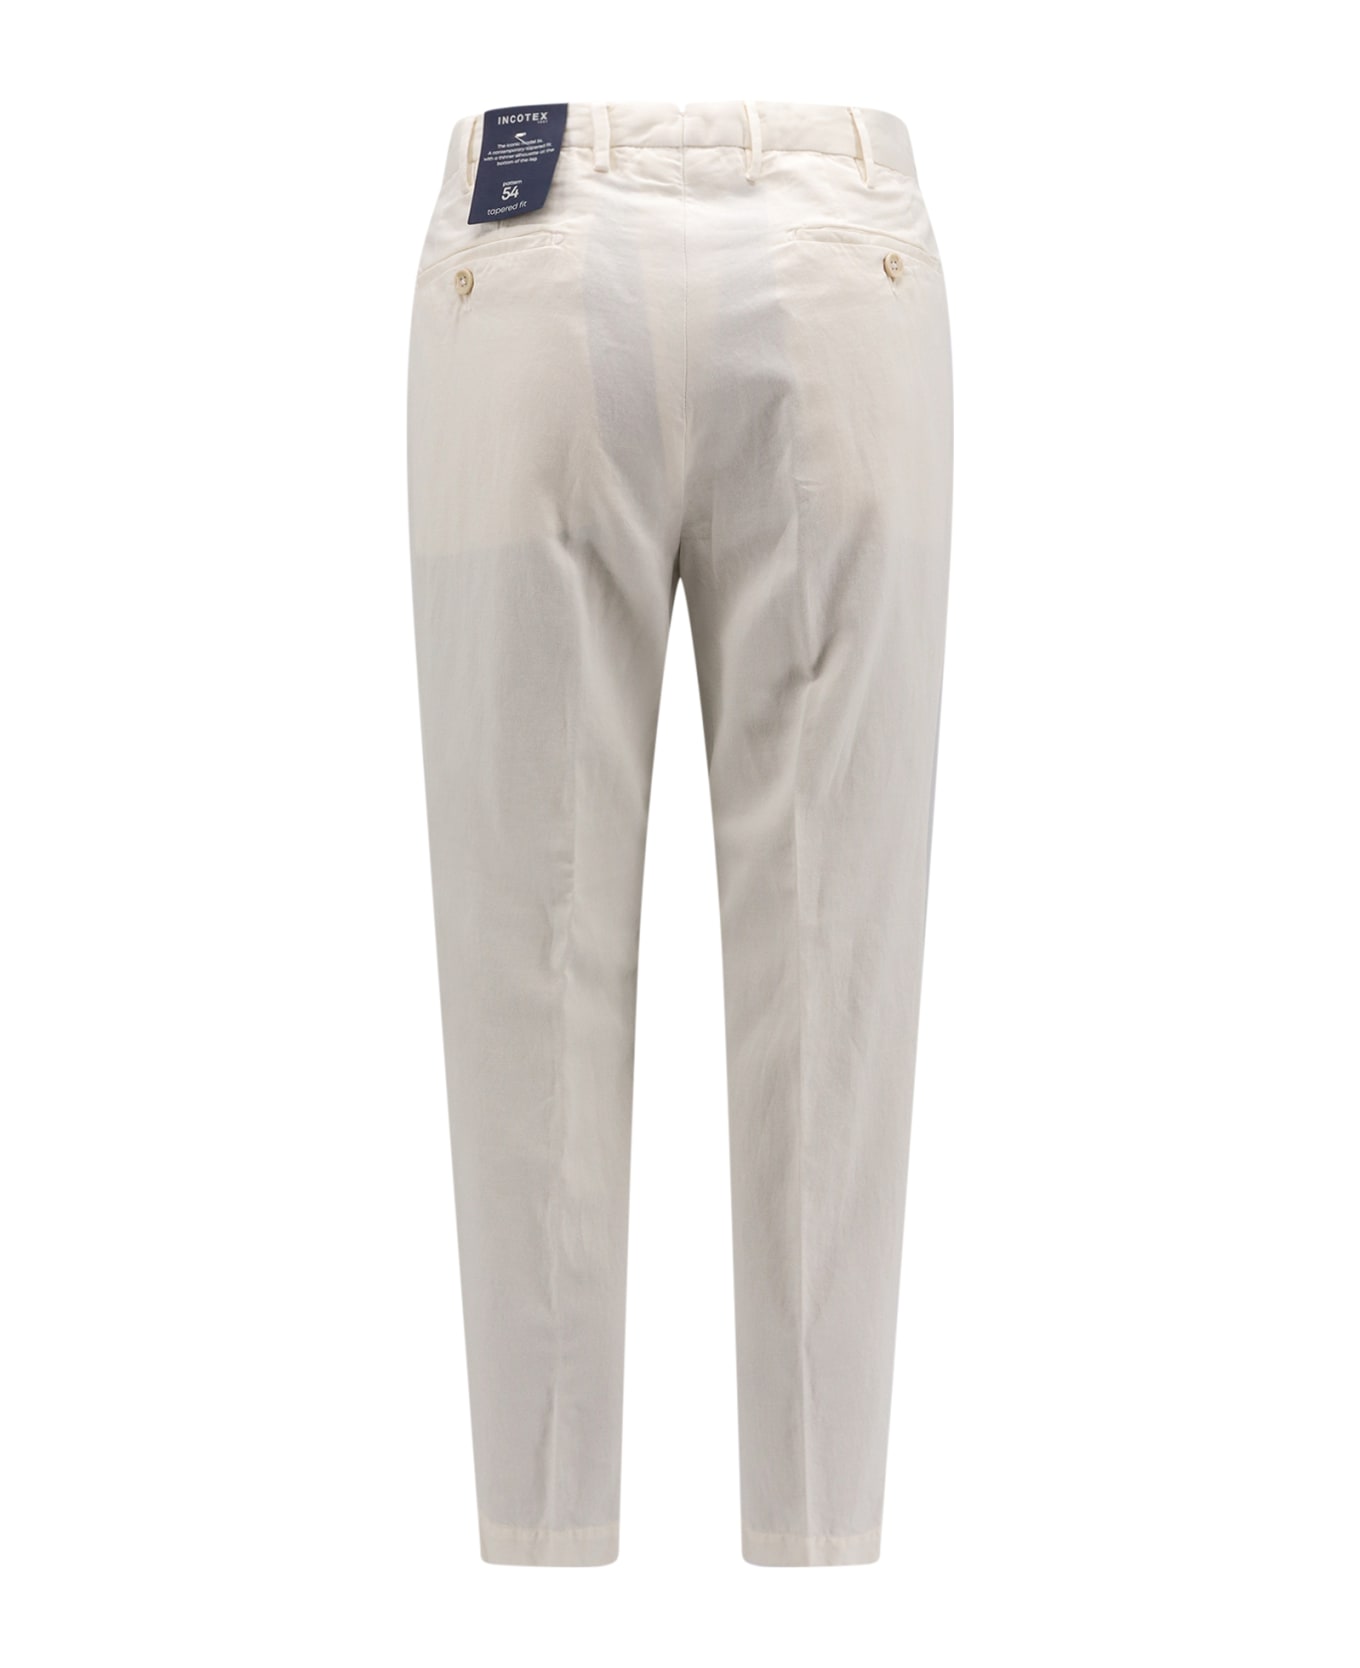 Incotex 54 Trouser - White